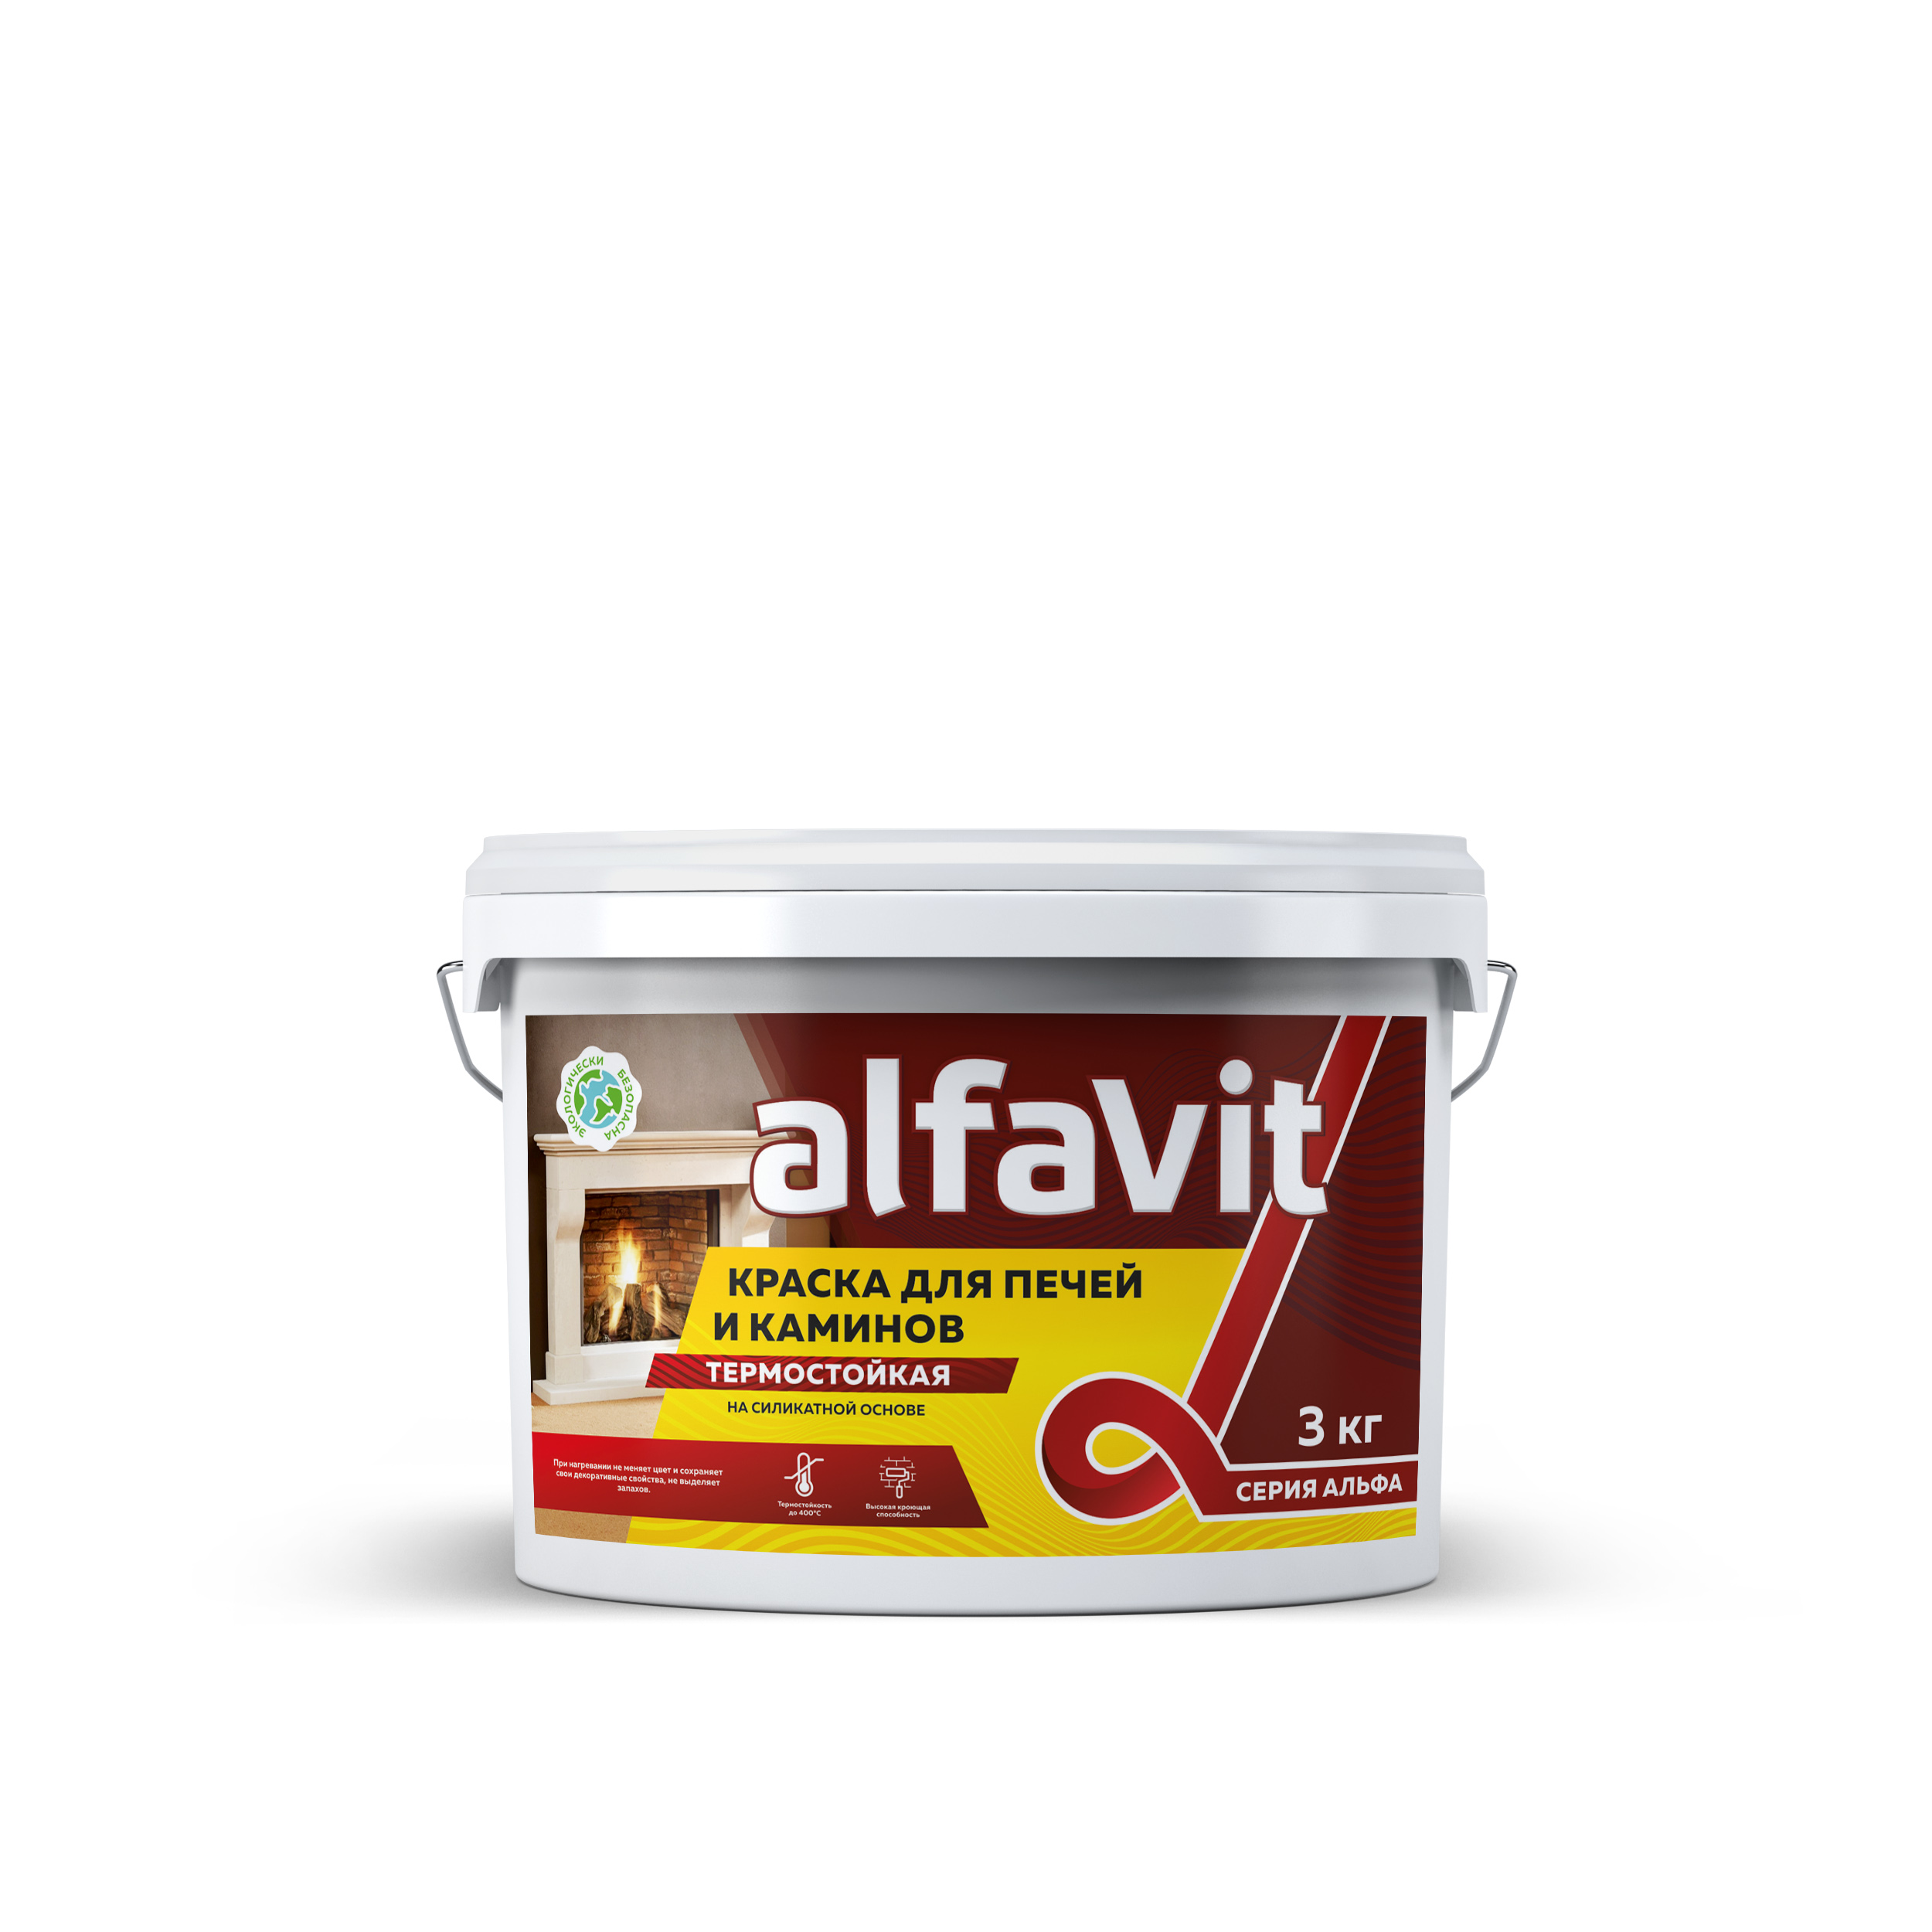 Краска для печей и каминов Alfavit серия Альфа, термостойкая, белая, 3 кг краска для печей и каминов резолюкс